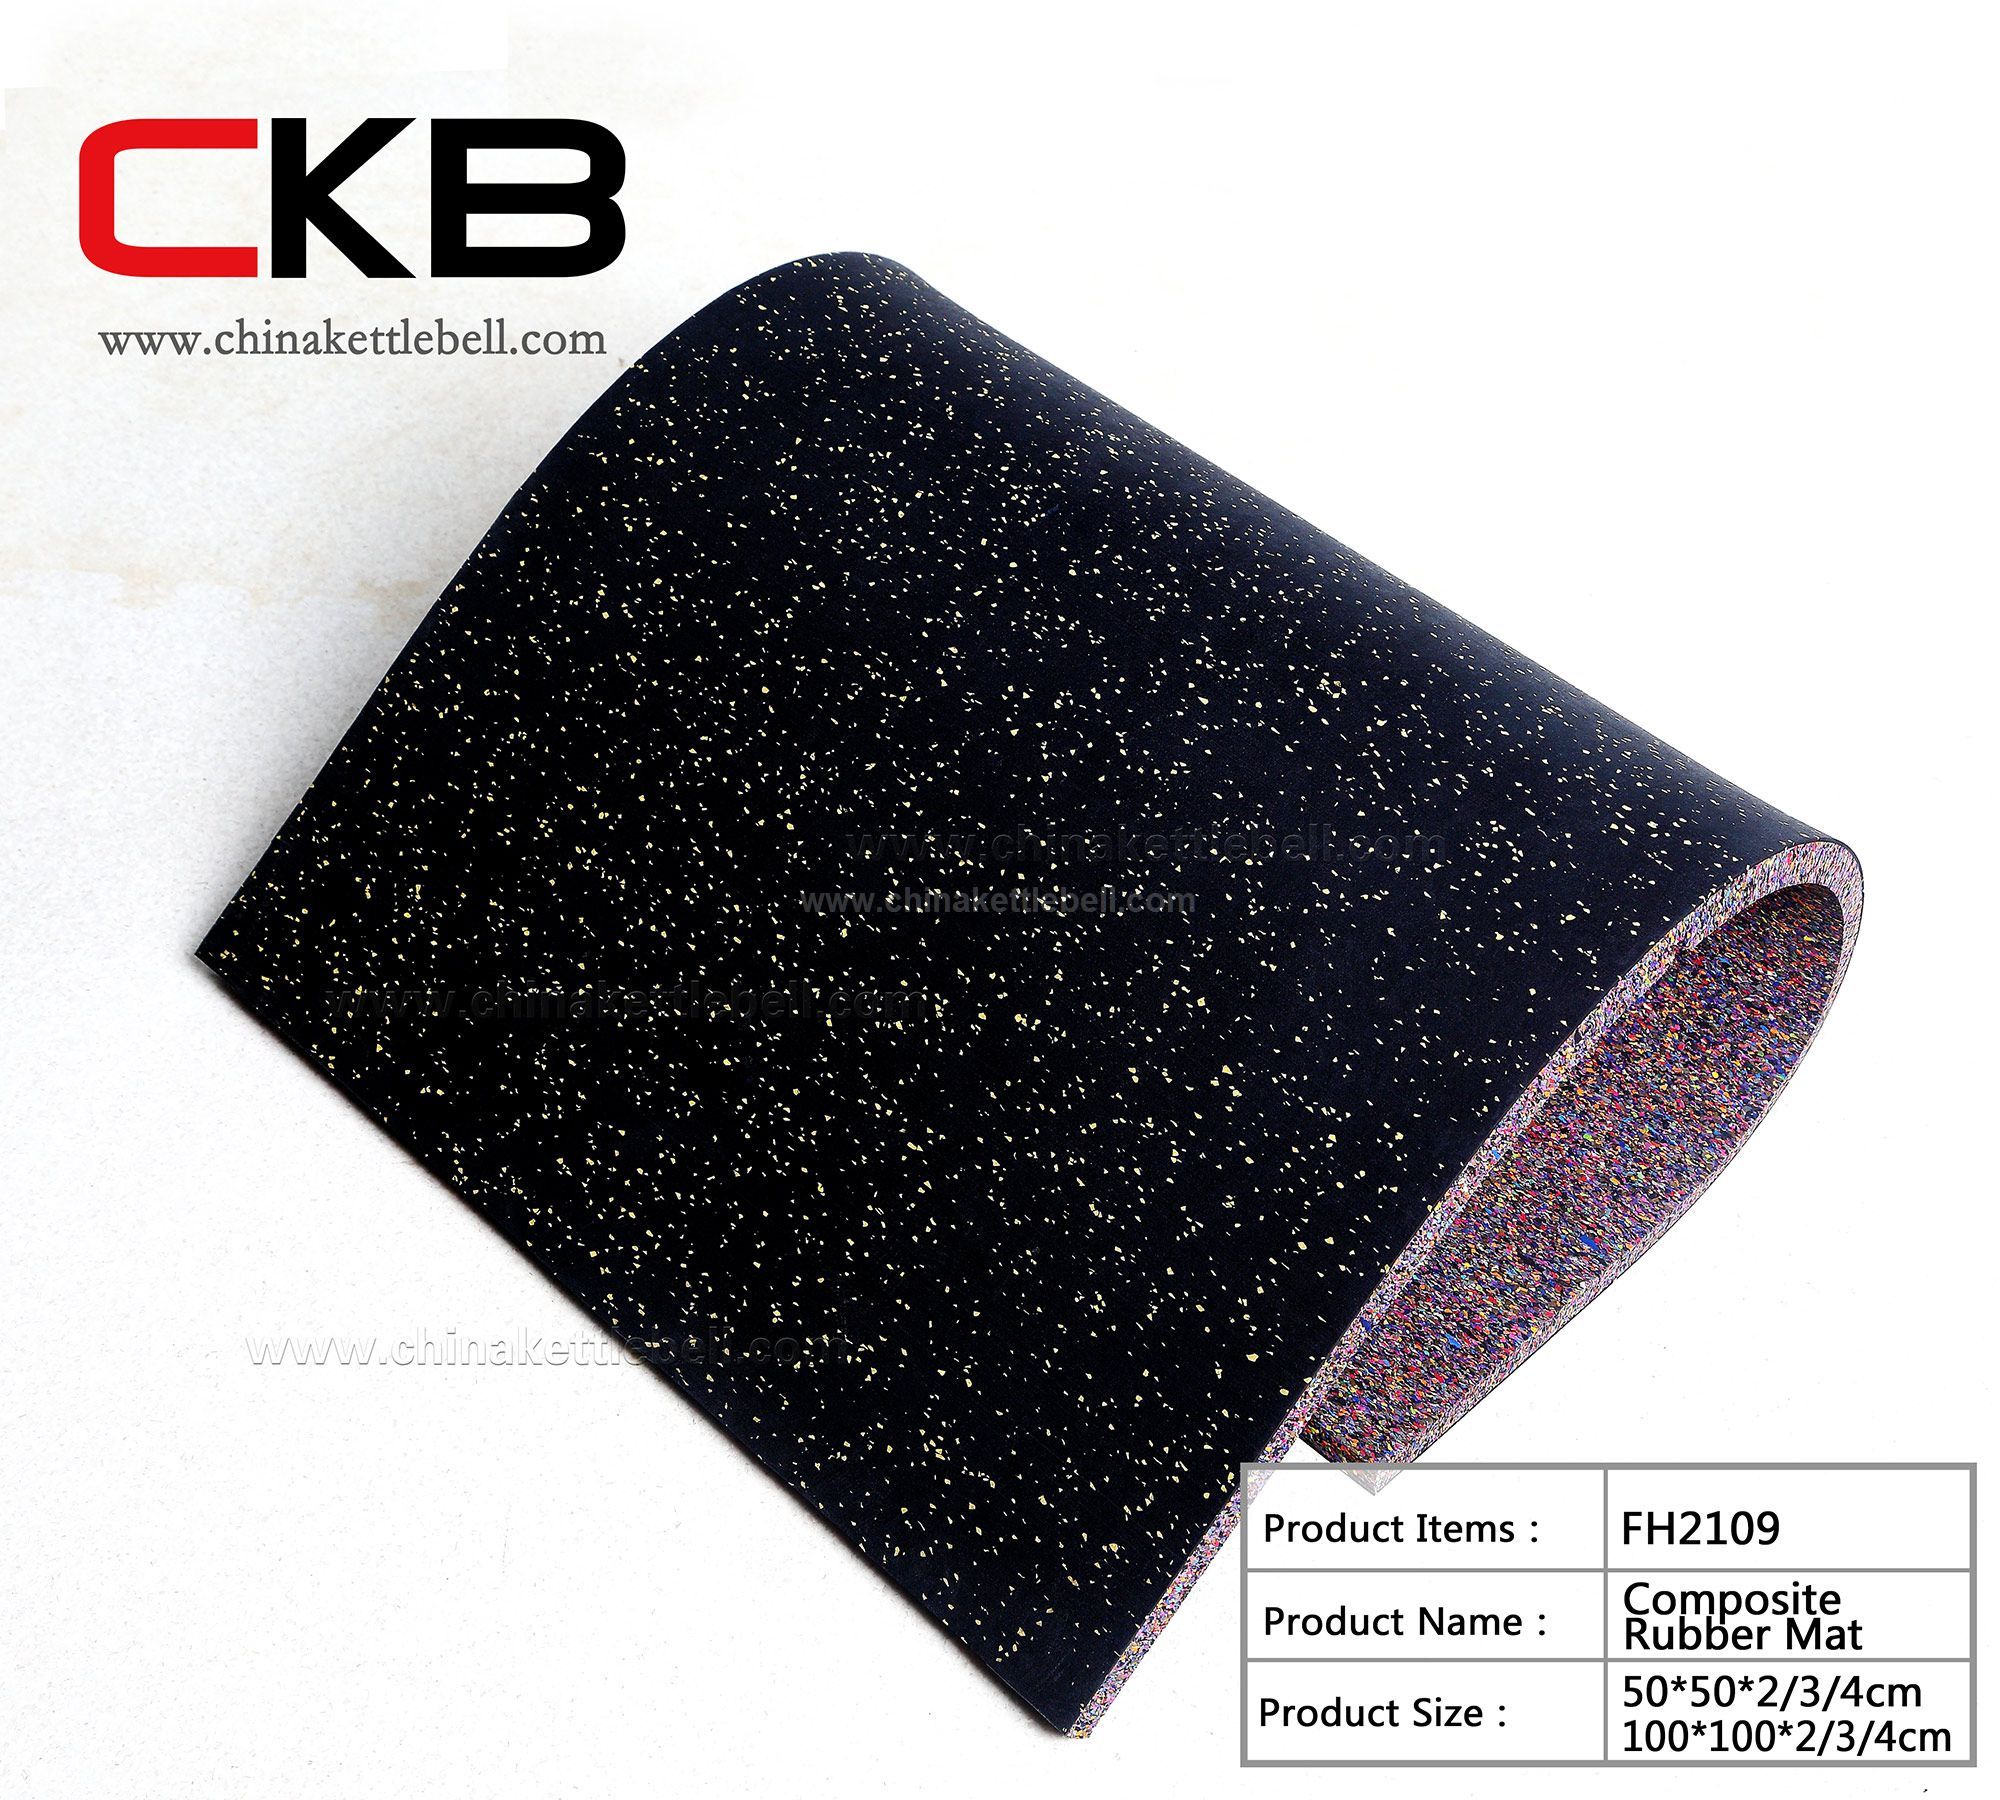 Composite Rubber Mat